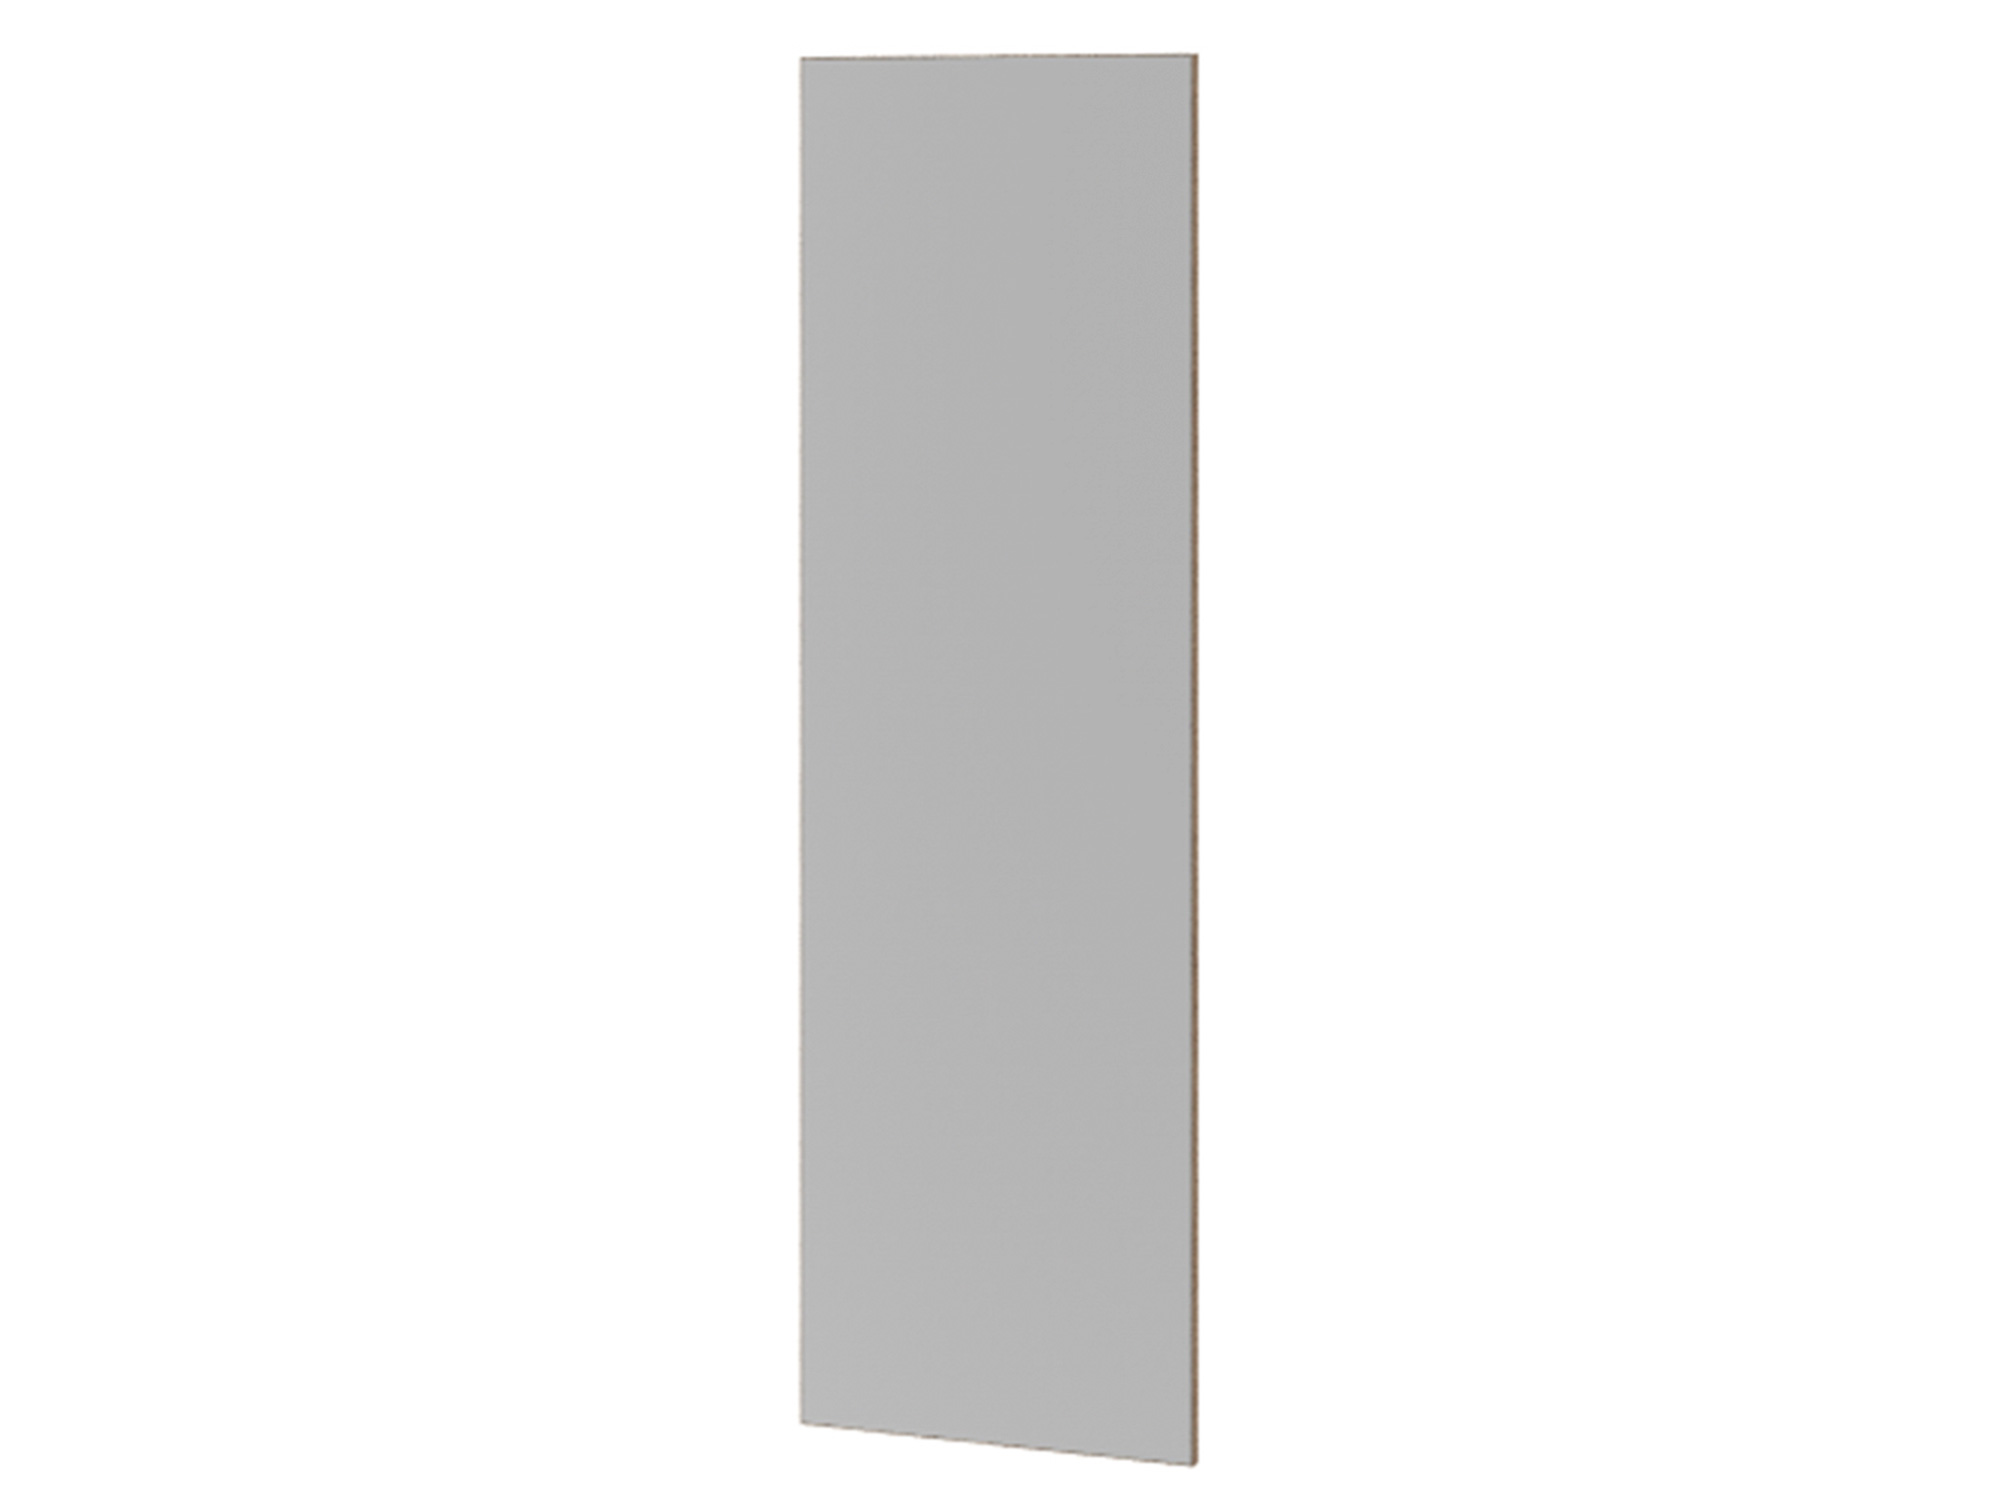 Панель с зеркалом Эльза Коричневый, Зеркало, ЛДСП панель с зеркалом со встроенной гладильной доской тип 1 коричневый темный лдсп зеркало металл